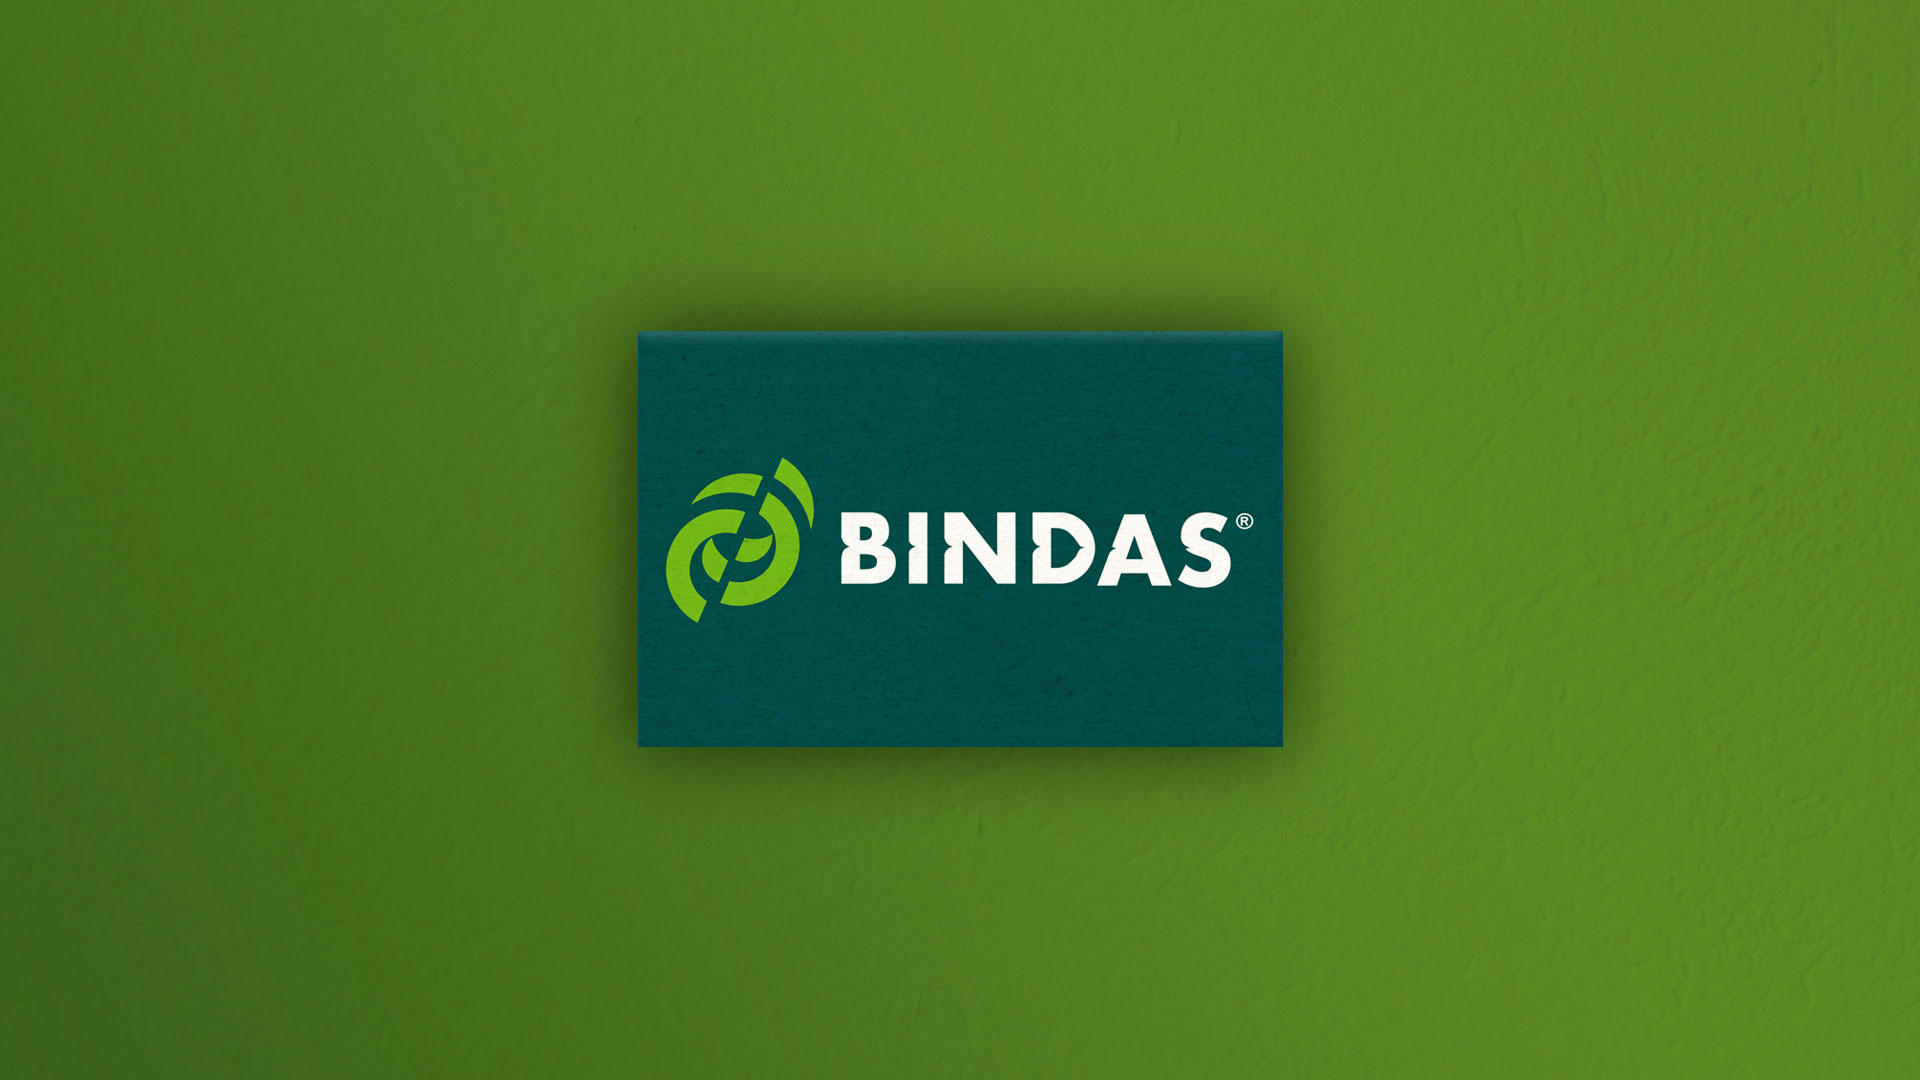 01-Bindas-Tarjeta-Nueva